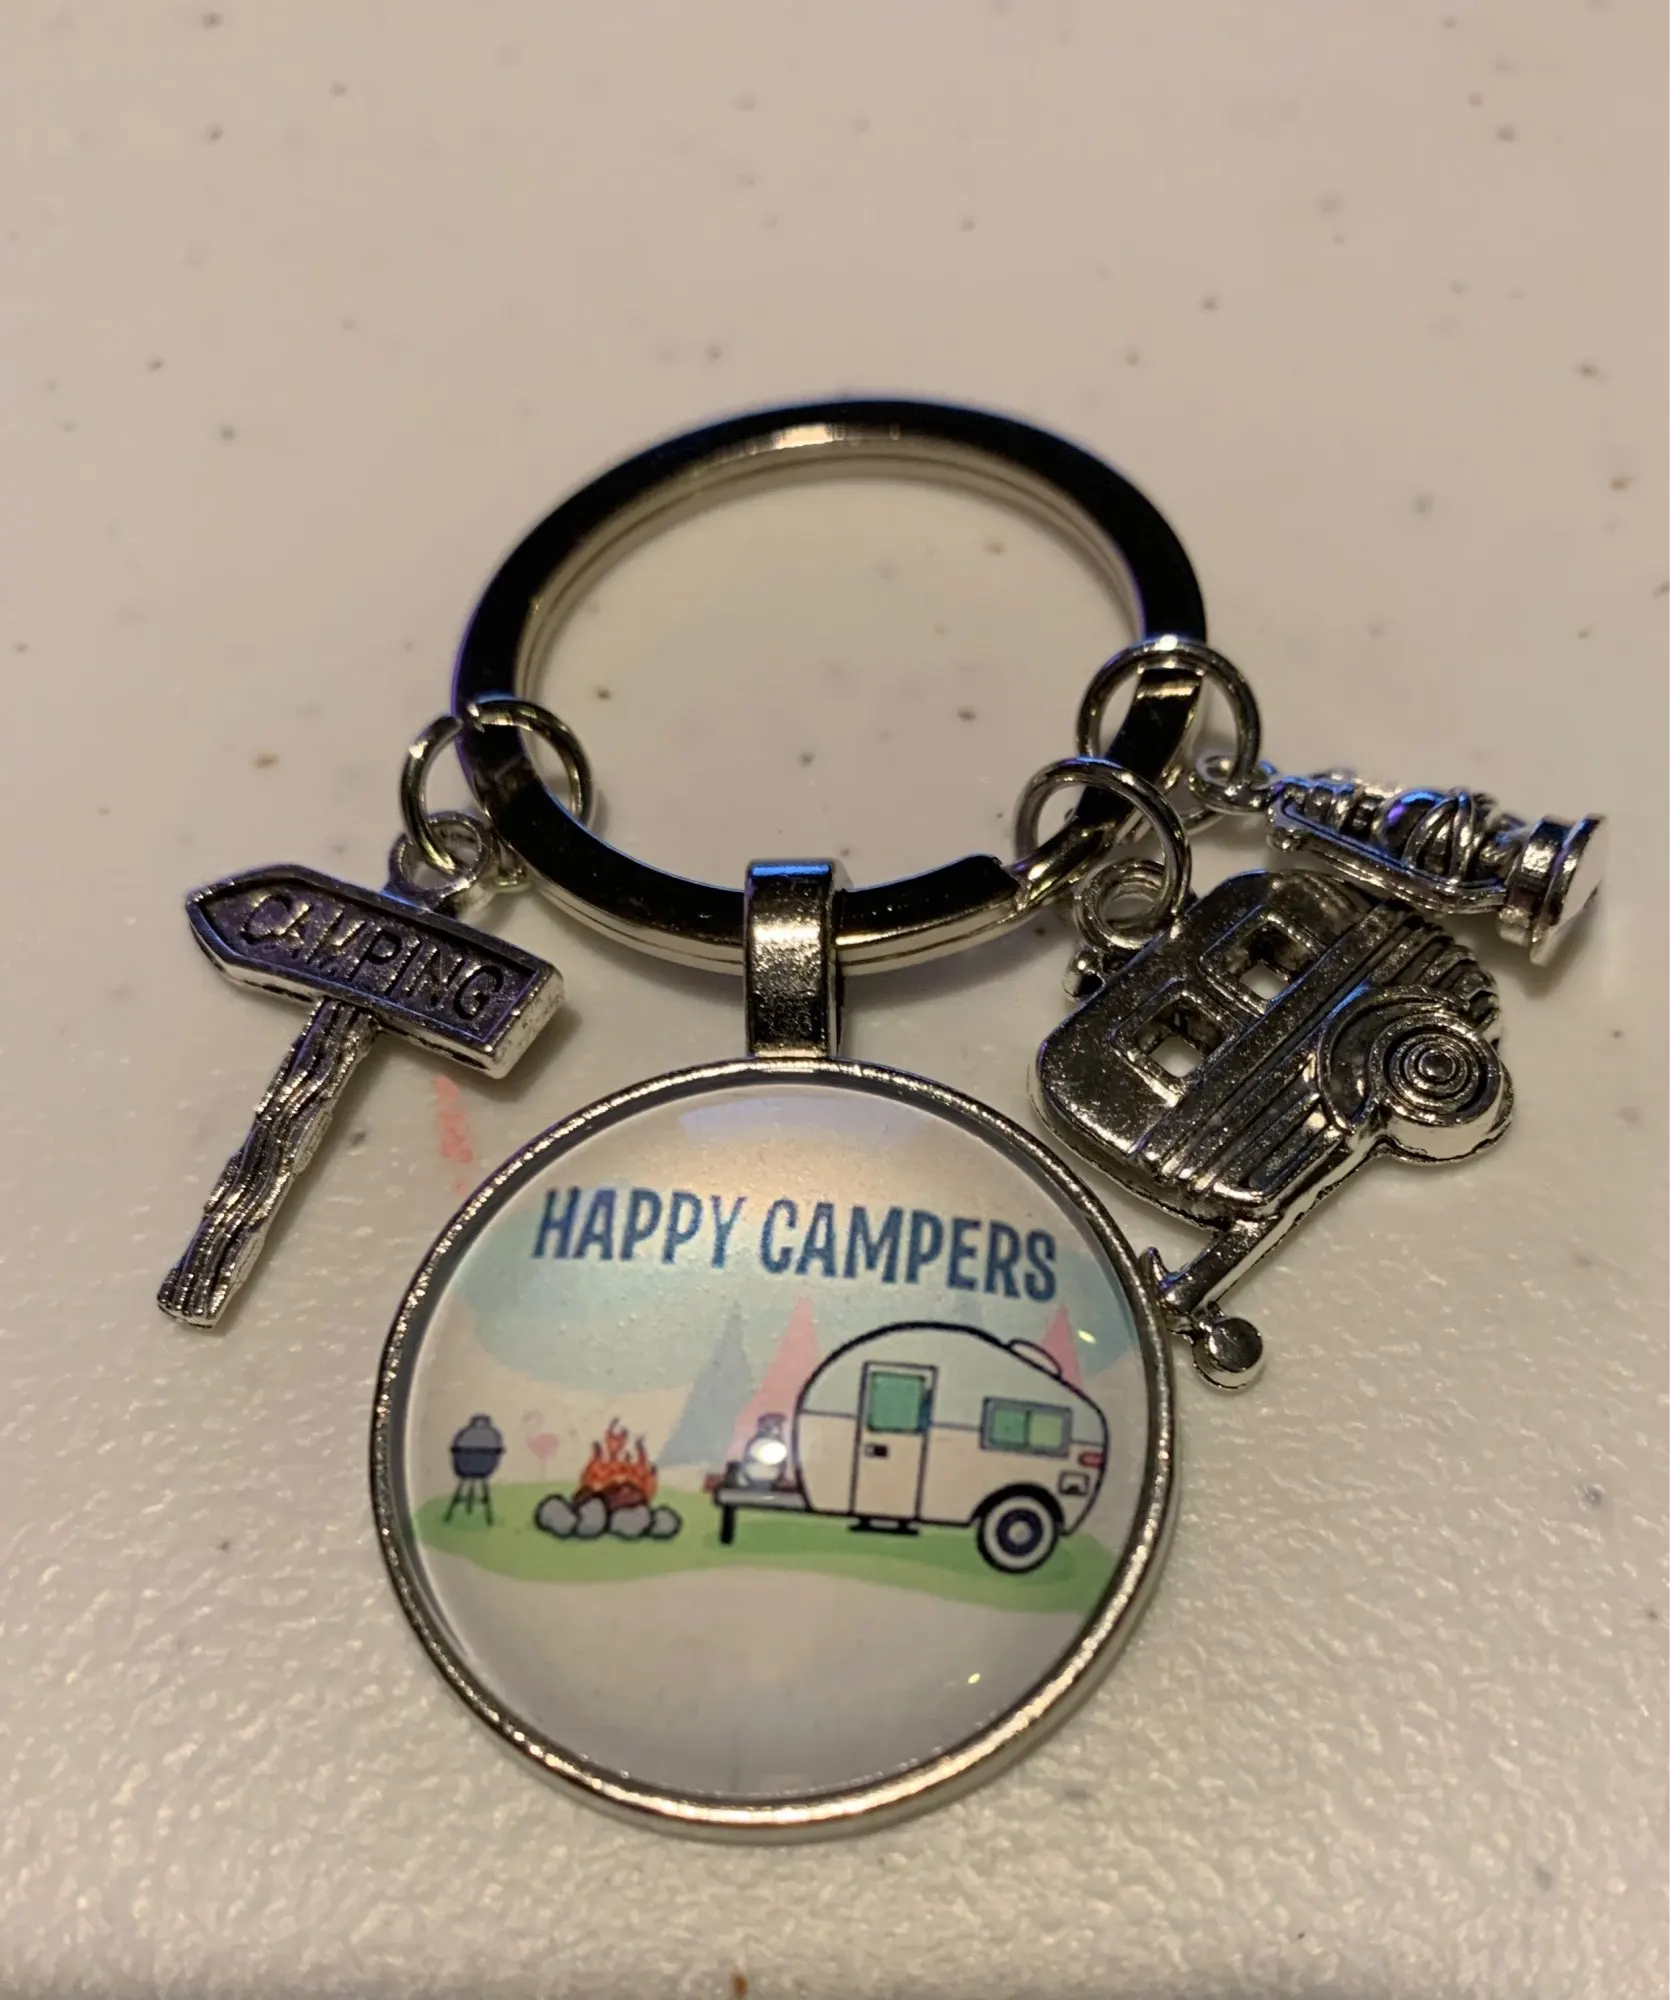 Camping key